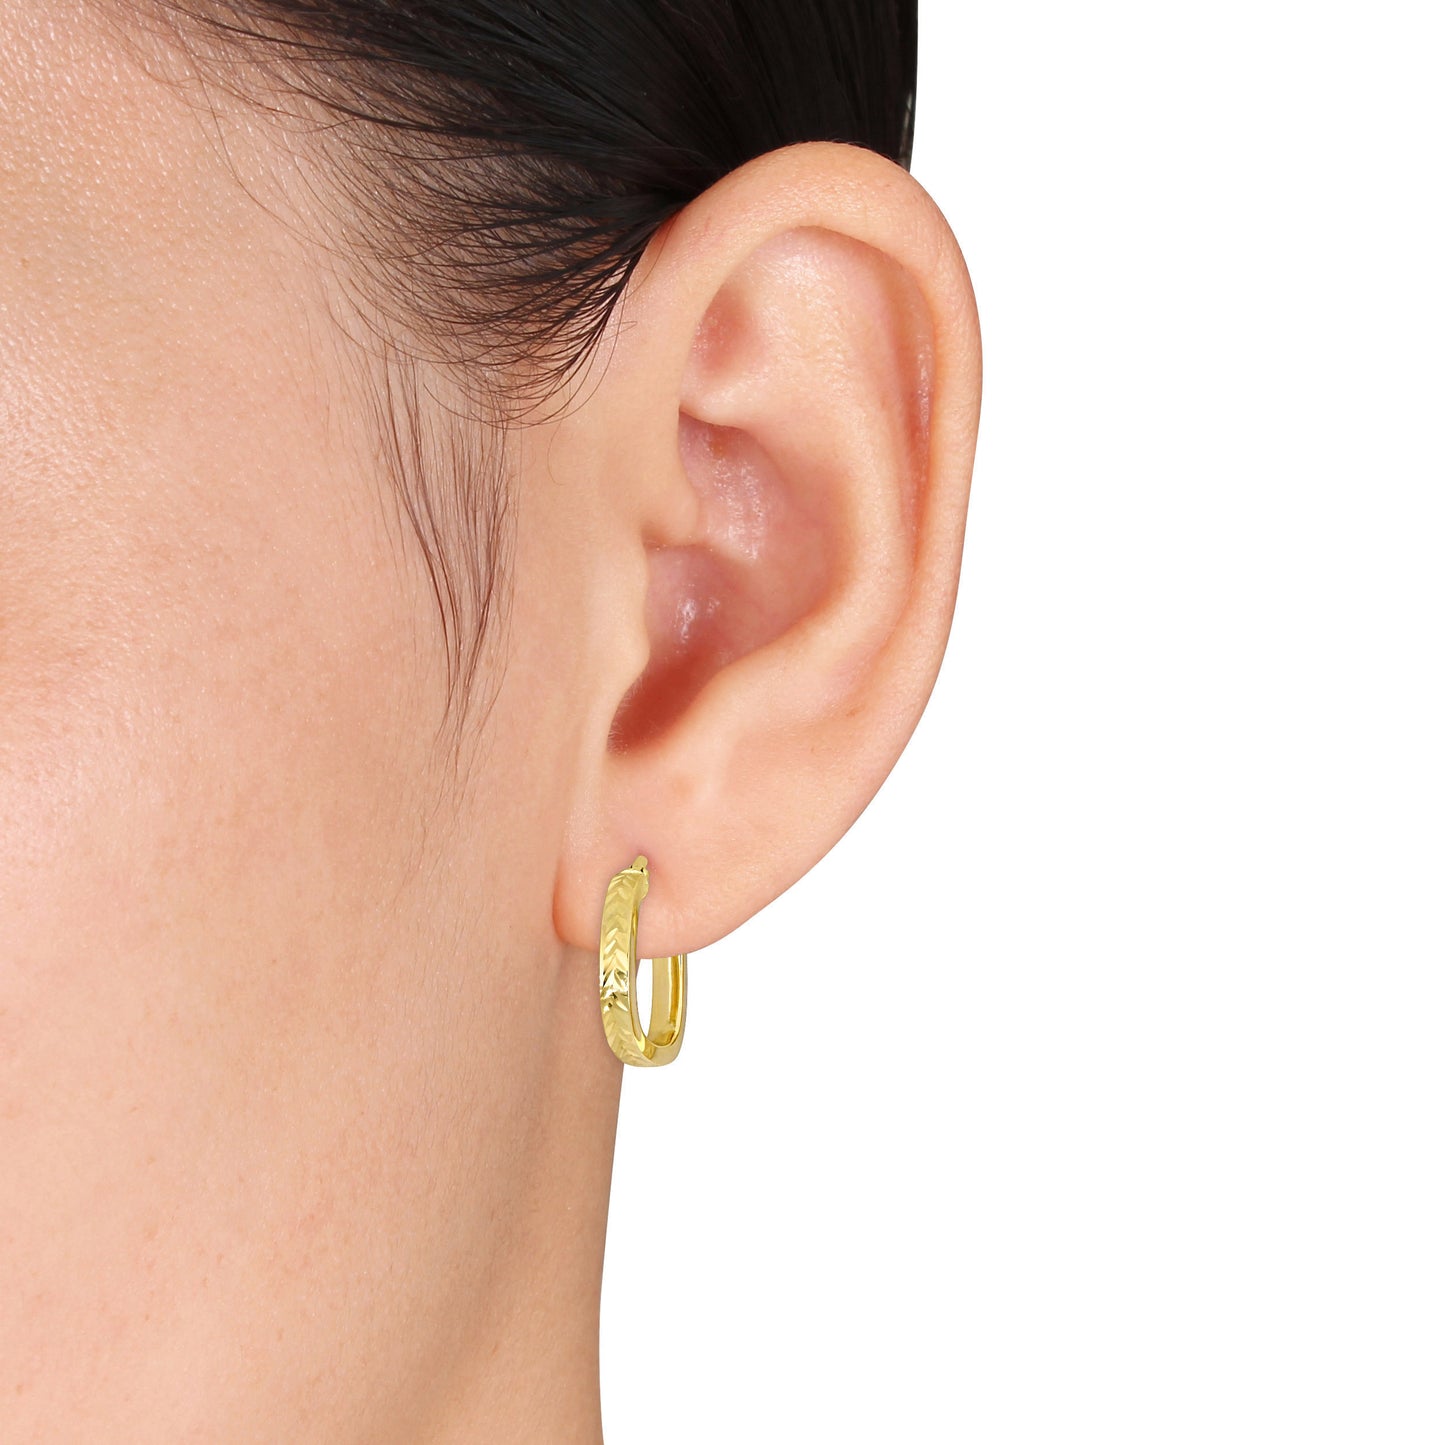 Fishtail Hoop Earrings in 10k Yellow Gold